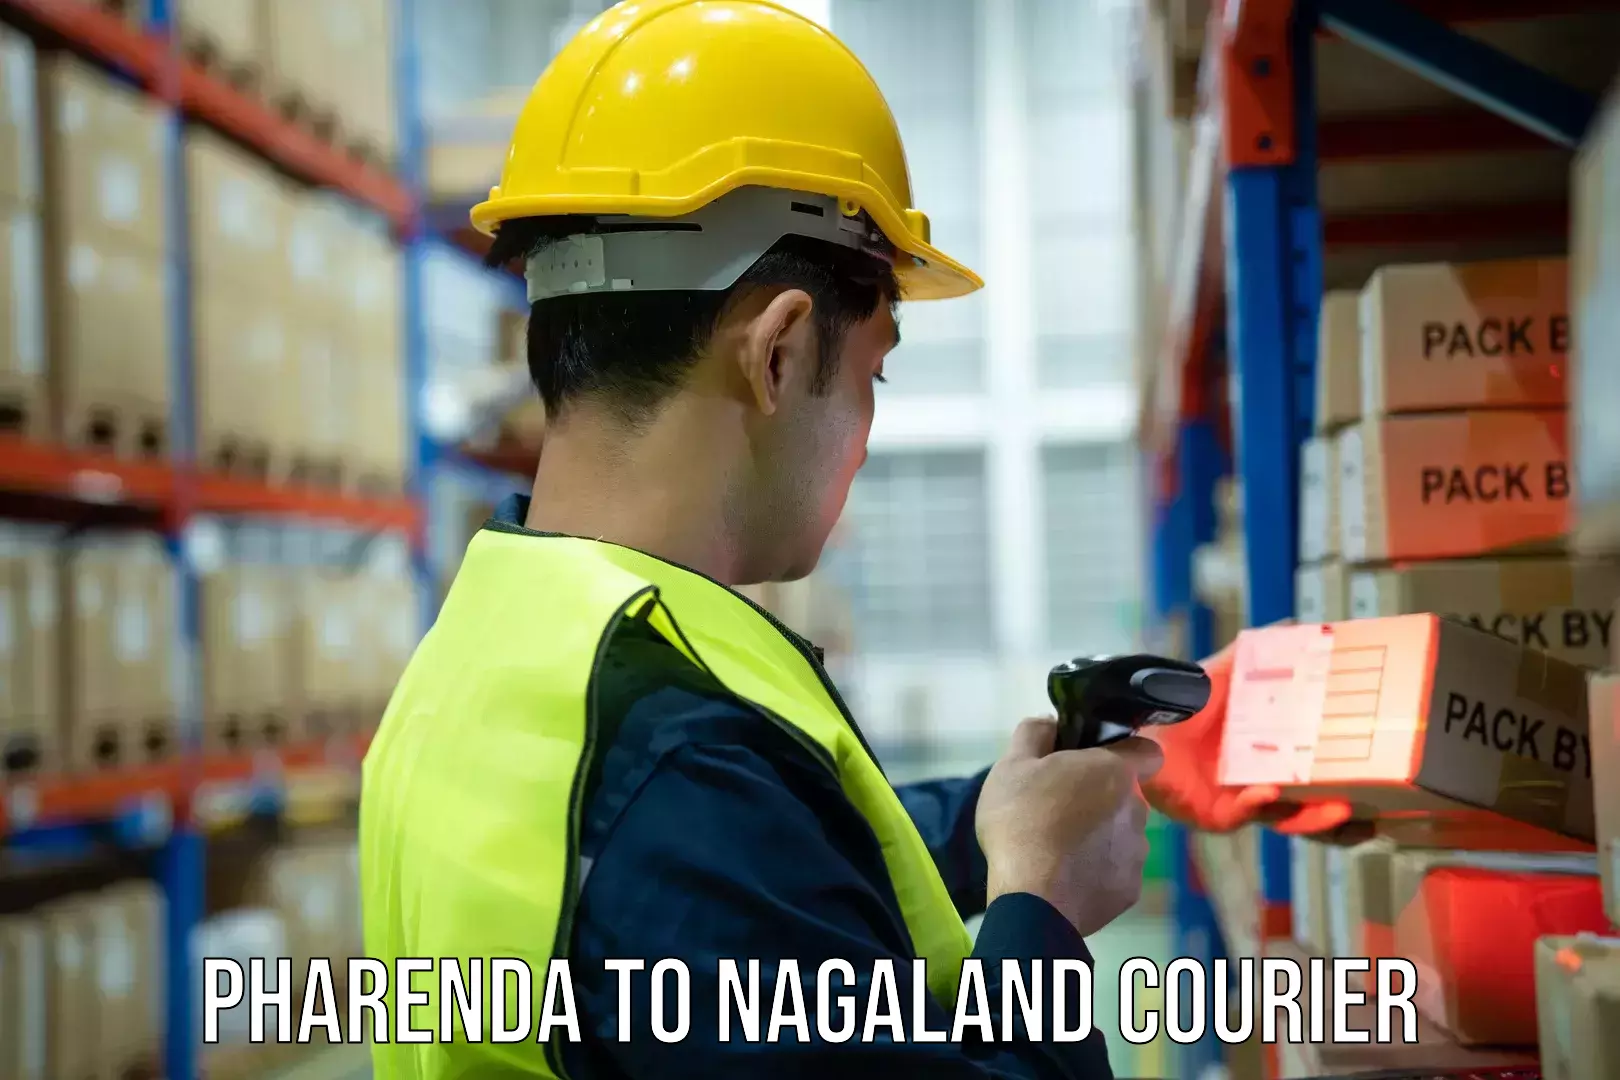 Tracking updates Pharenda to Nagaland